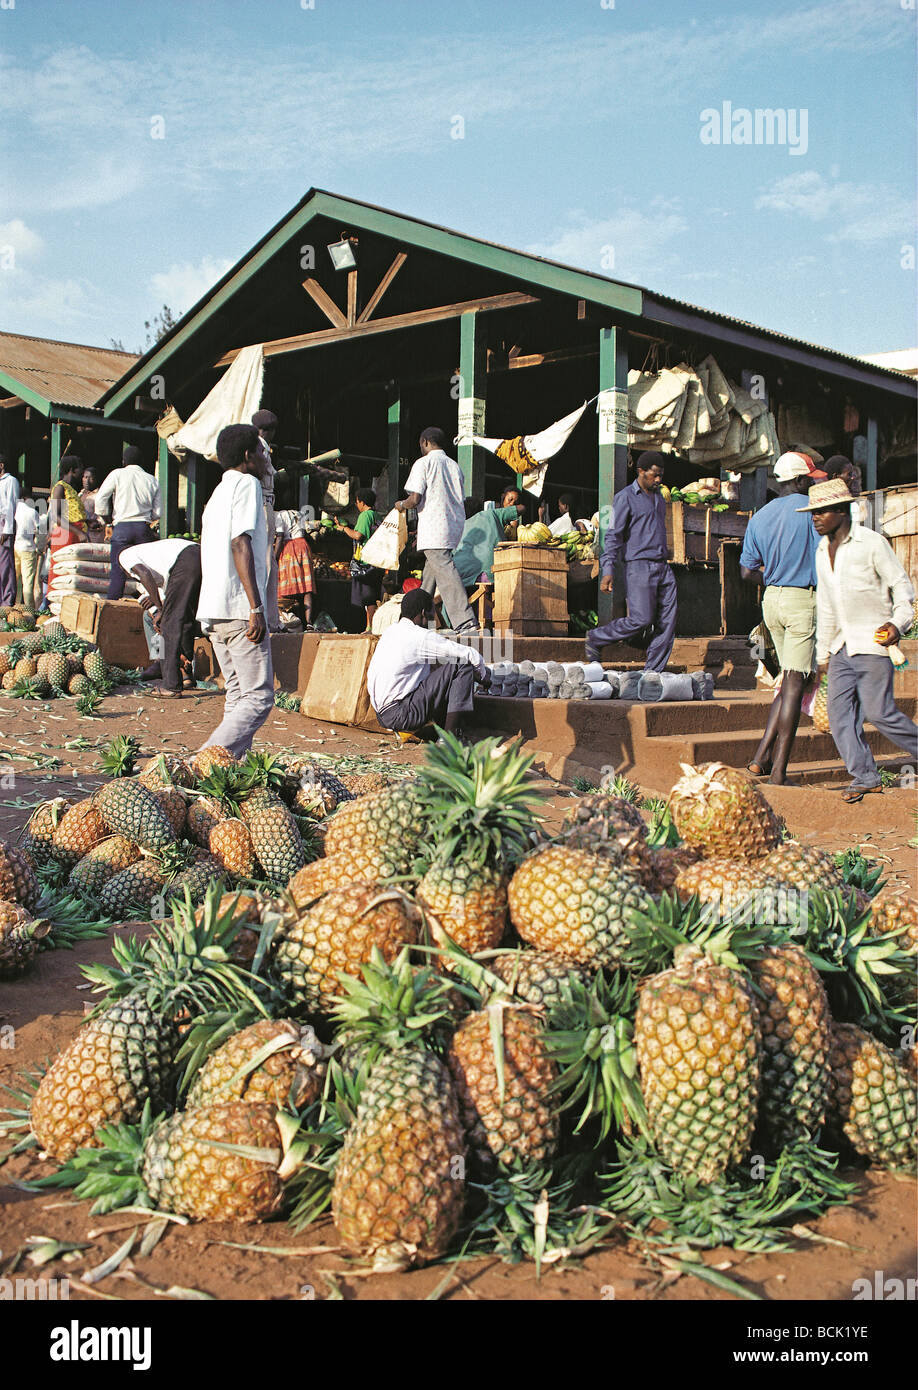 L'ananas à la vente à un décrochage en affaire d'Afrique de l'Est Ouganda Kampala Marché Banque D'Images